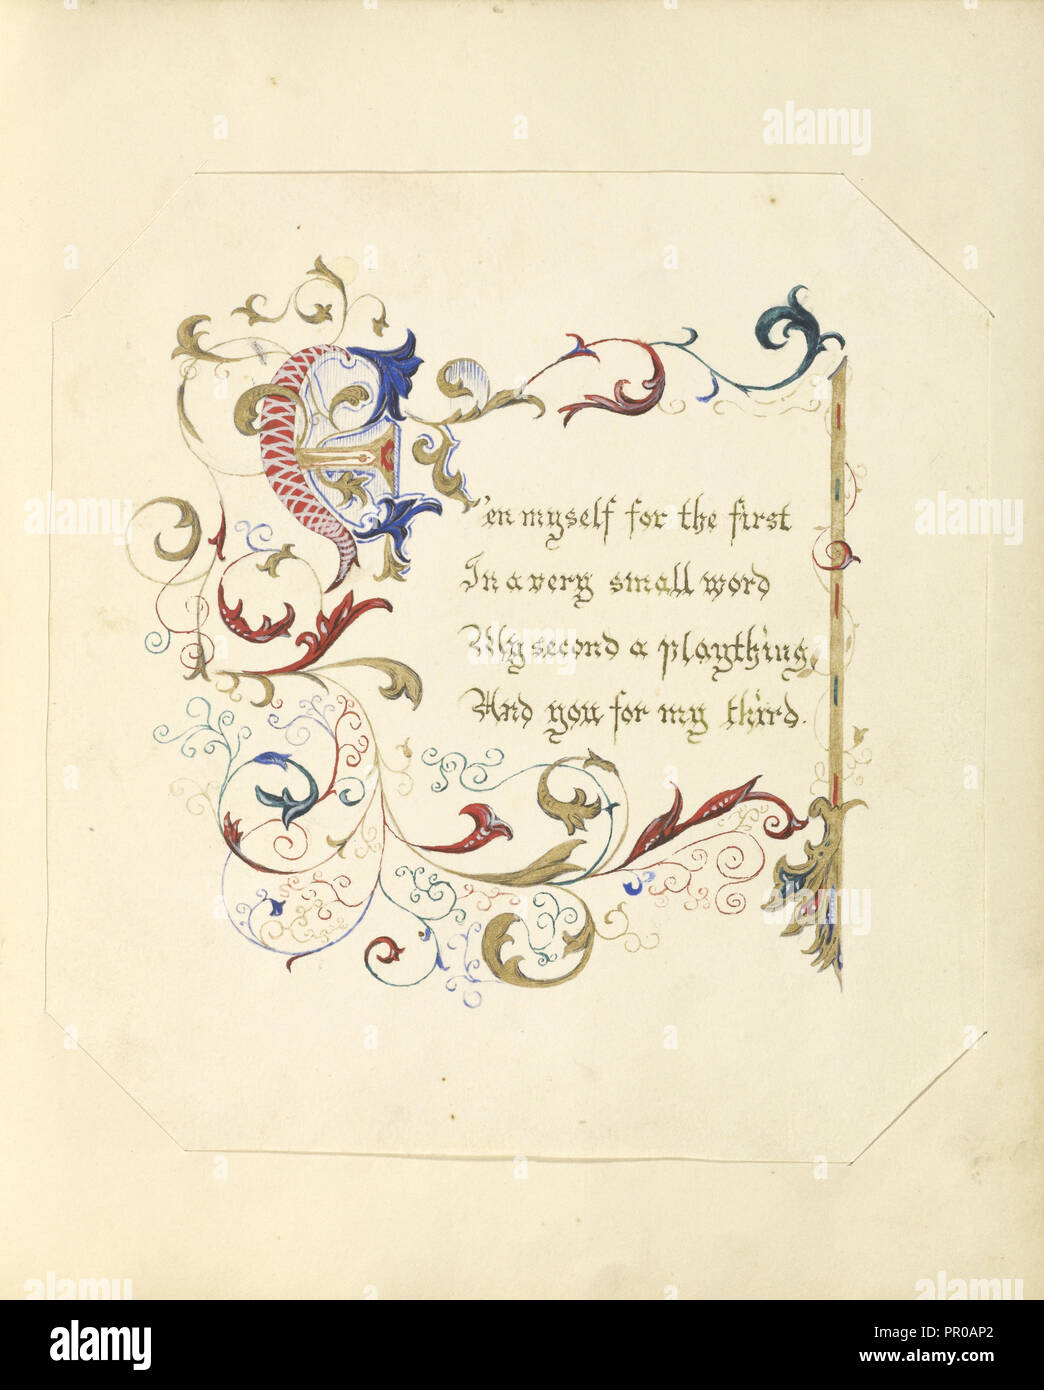 Manoscritto illuminato poesia; British; Inghilterra; 1843 - 1845; rosso, blu, verde e inchiostro rosa con doratura; 17,1 x 16,3 cm Foto Stock